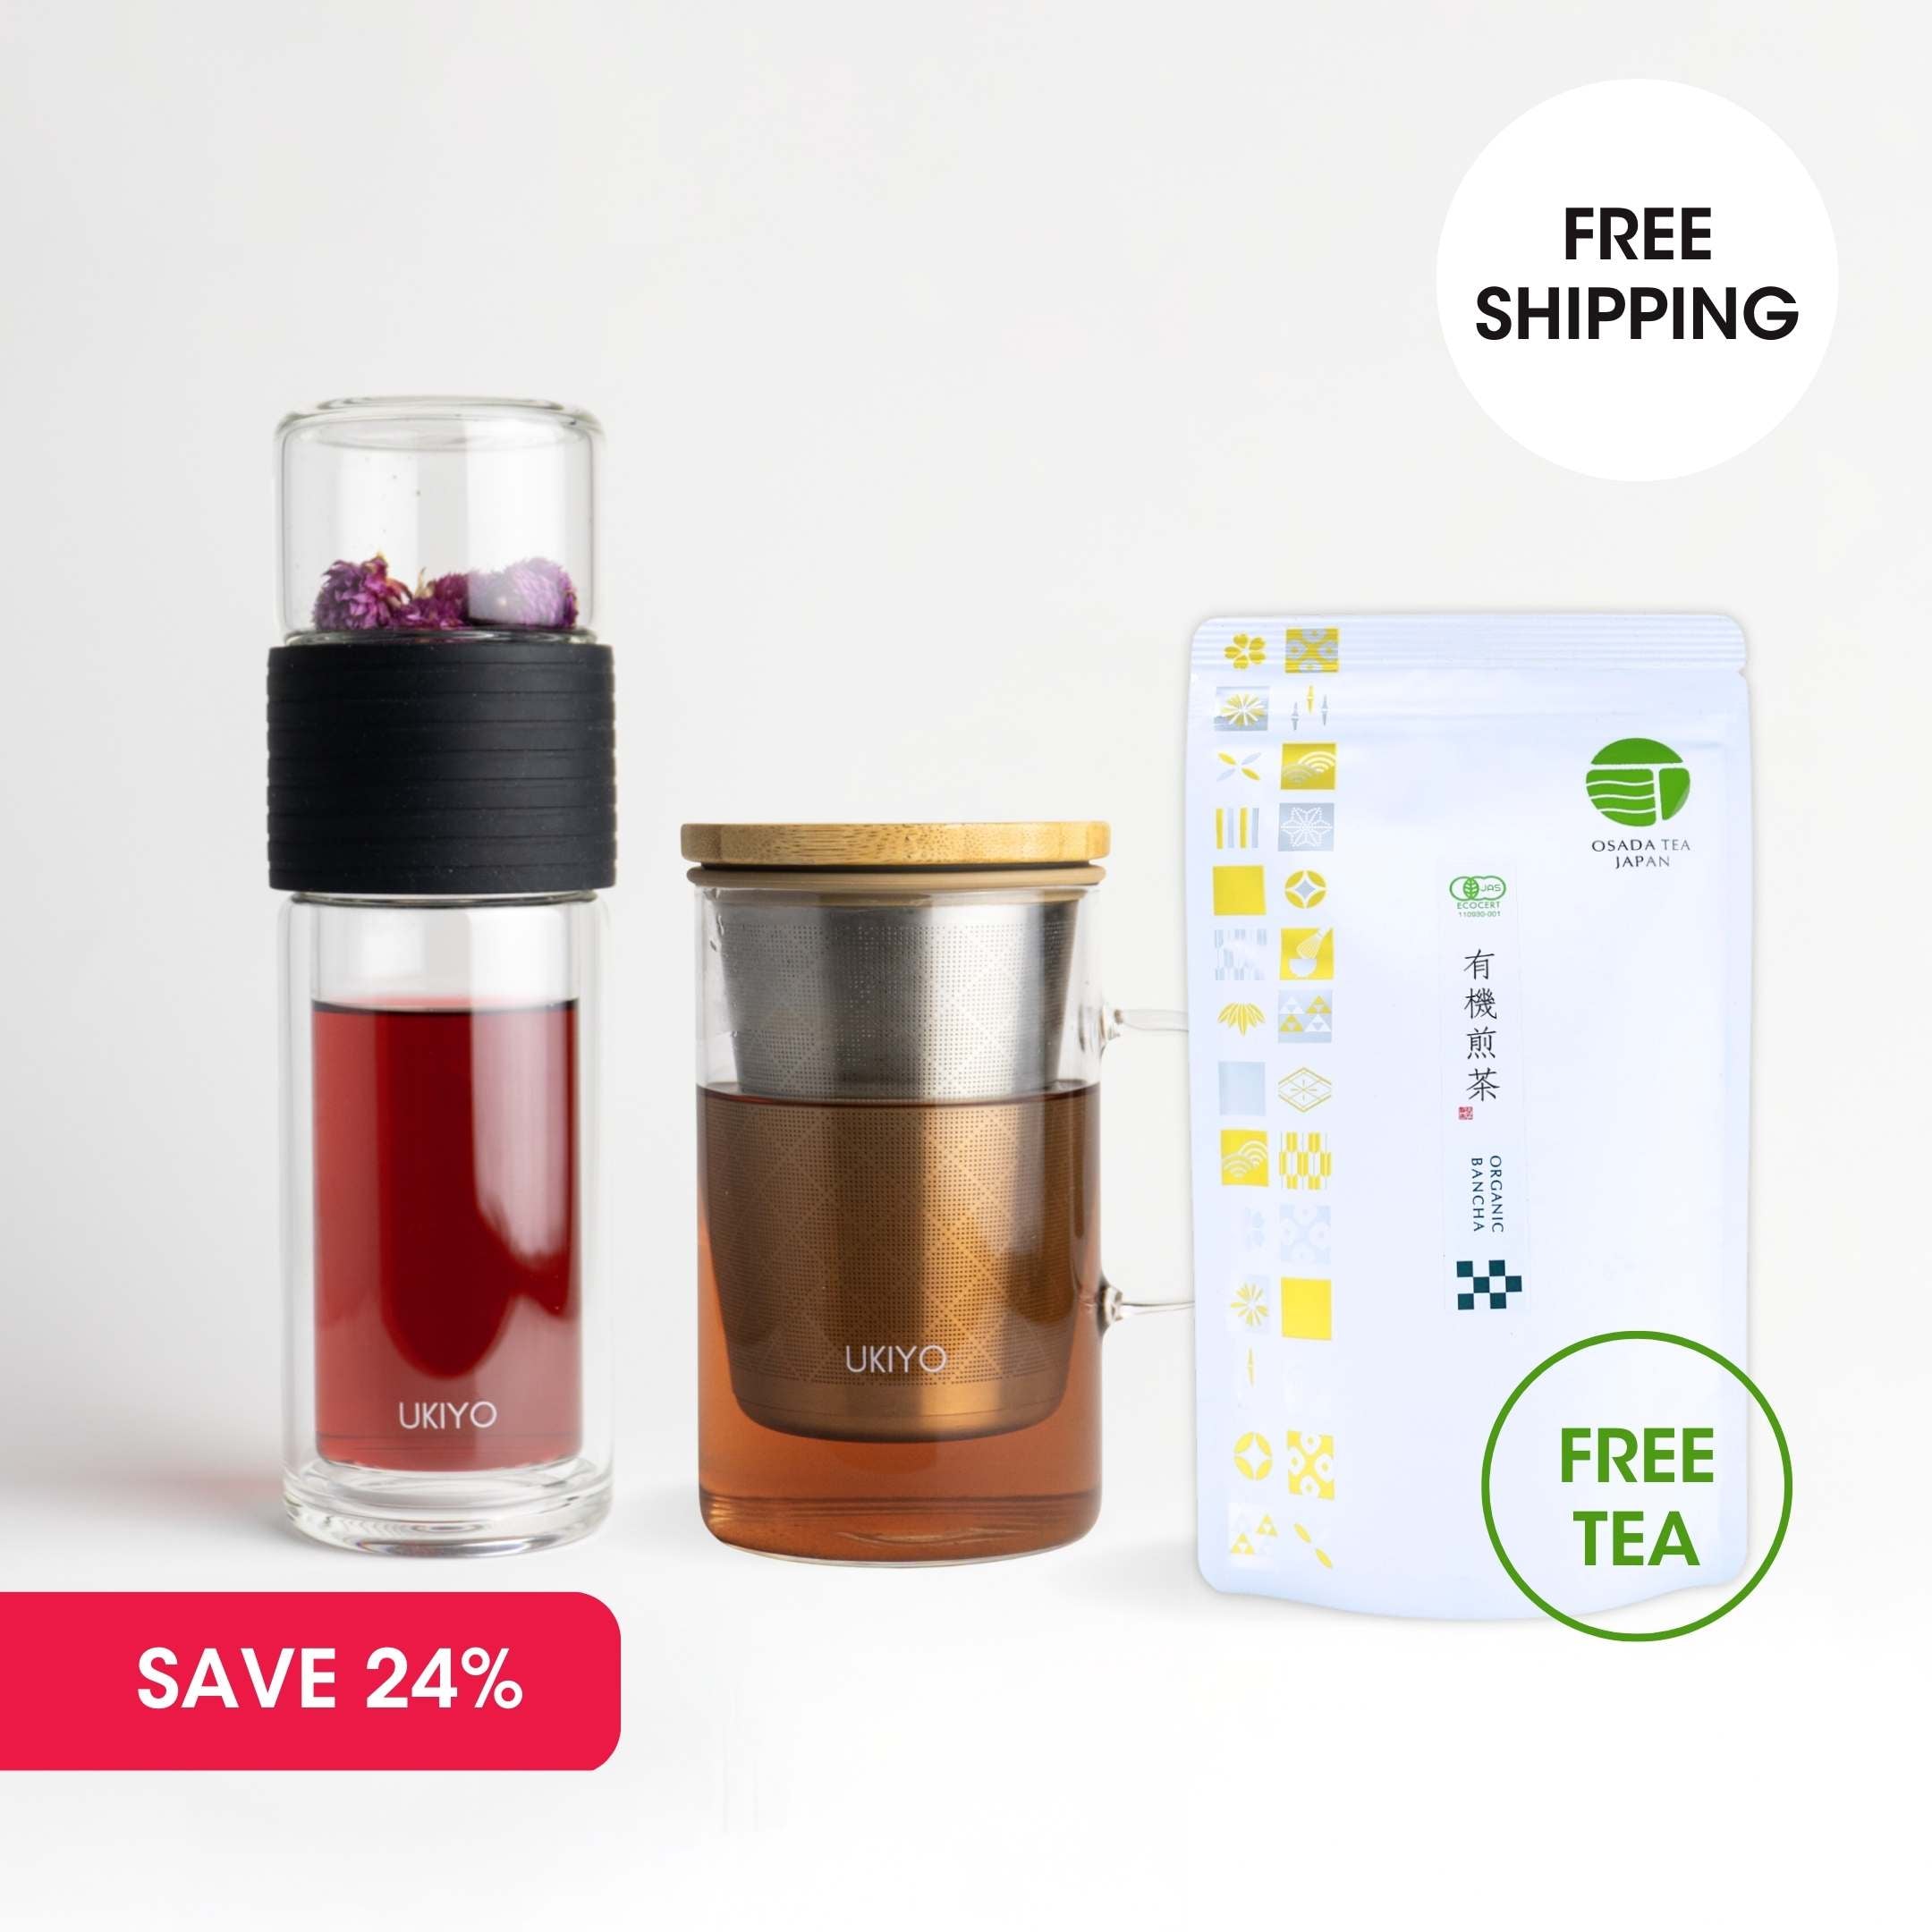 Double Up Mix Pack - Ukiyo Sense, Ukiyo Wood & FREE Organic Bancha Tea